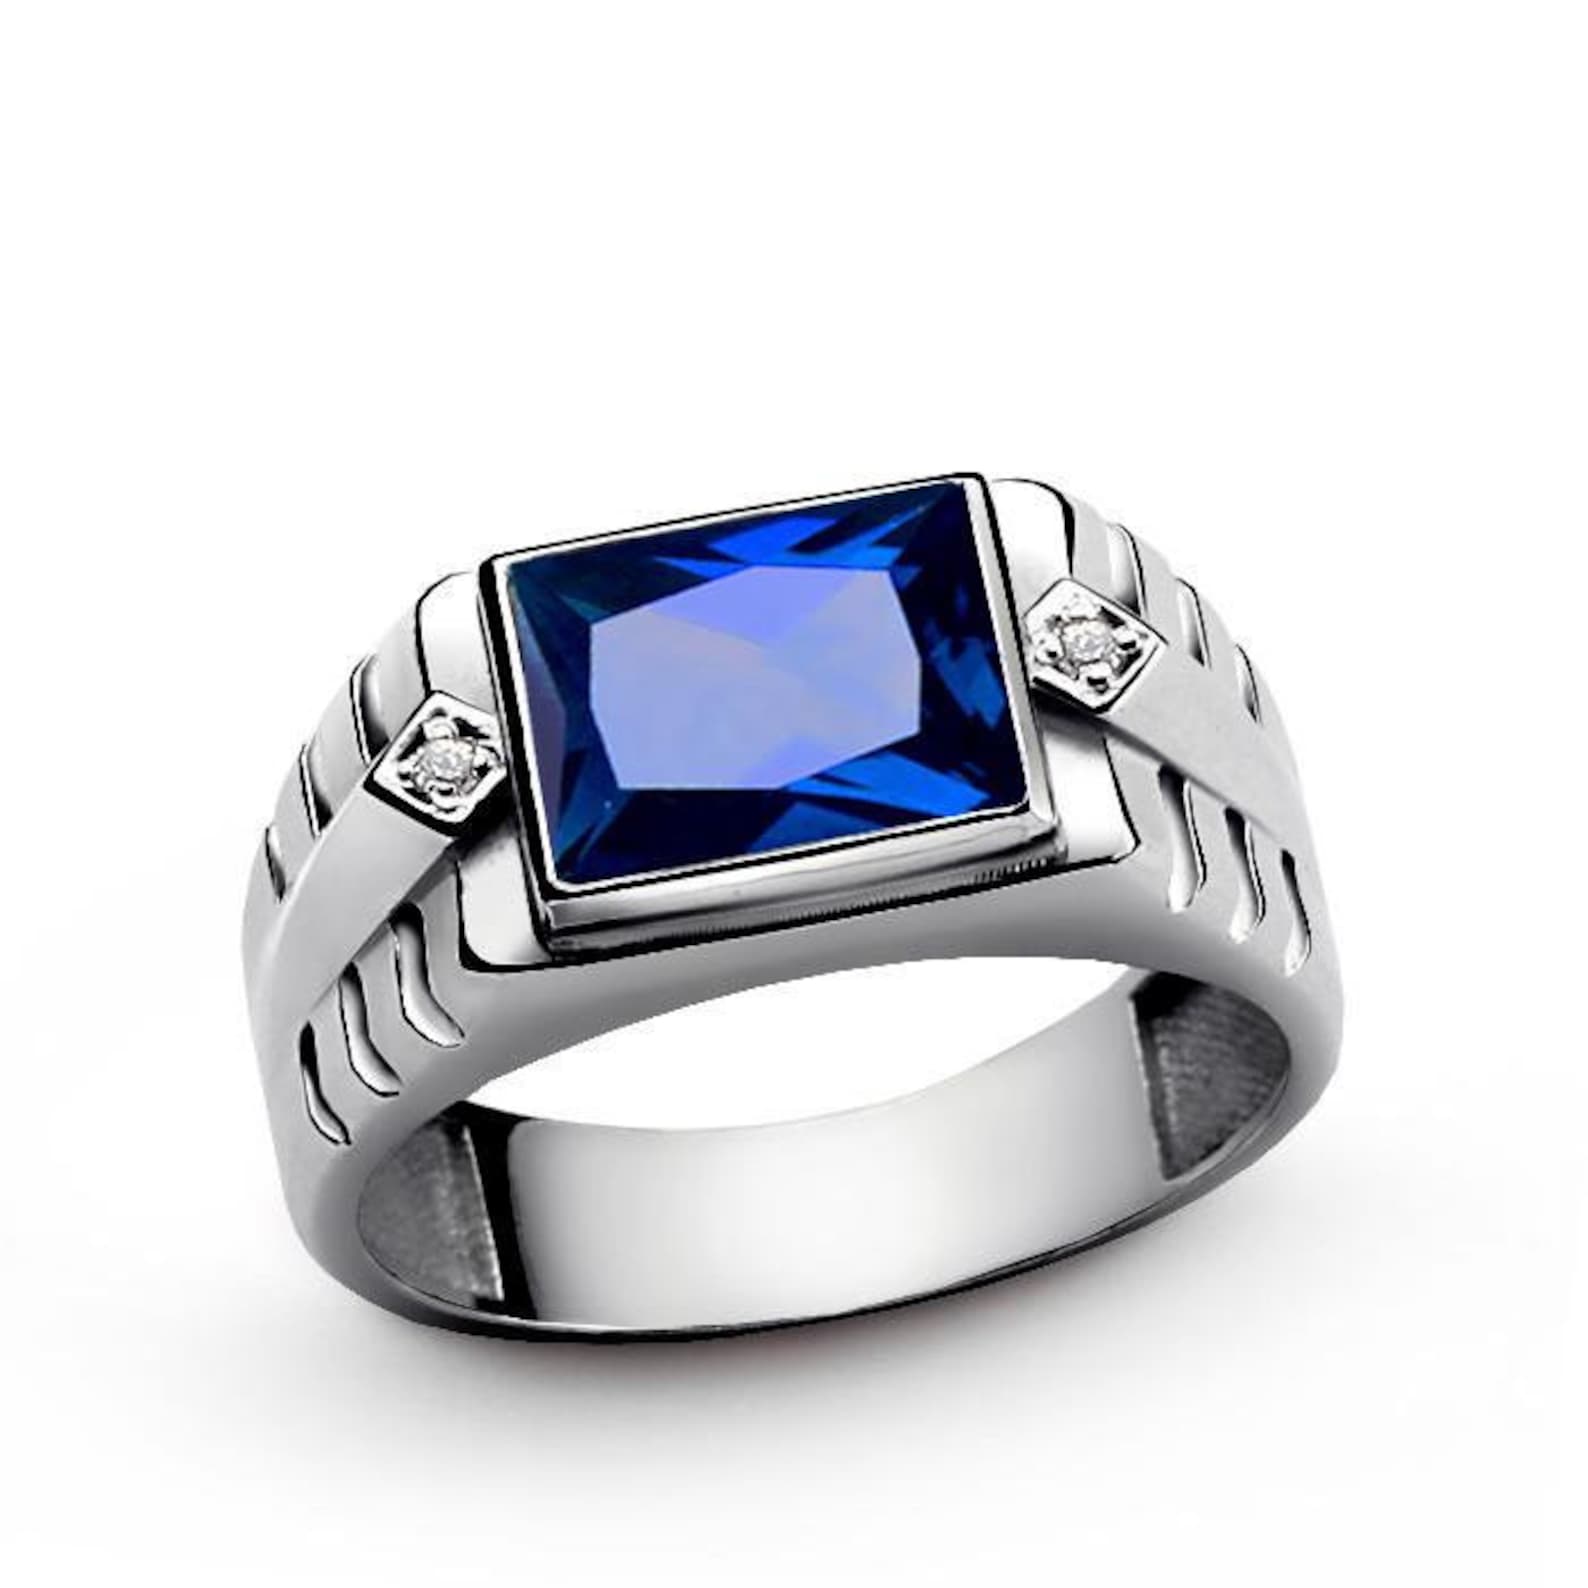 Перстни мужские серебро с камнями. Перстень Sapphire Ring for men. Изумрудная Диамант мужской перстень. Мужской перстень Аквамарин изумрудной огранки. Кольцо с изумрудом в серебре мужское.